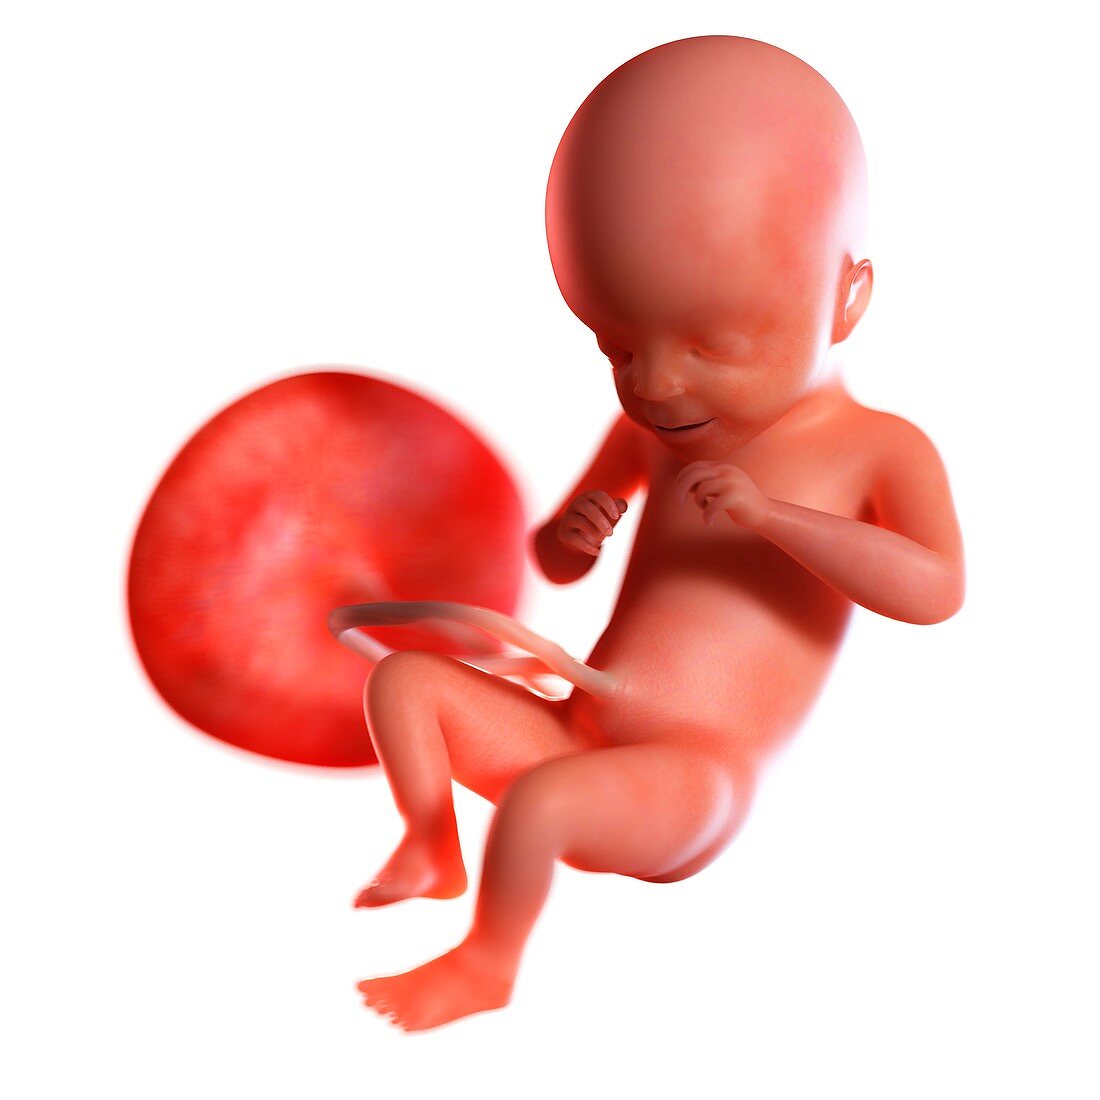 Human foetus age 21 weeks, illustration